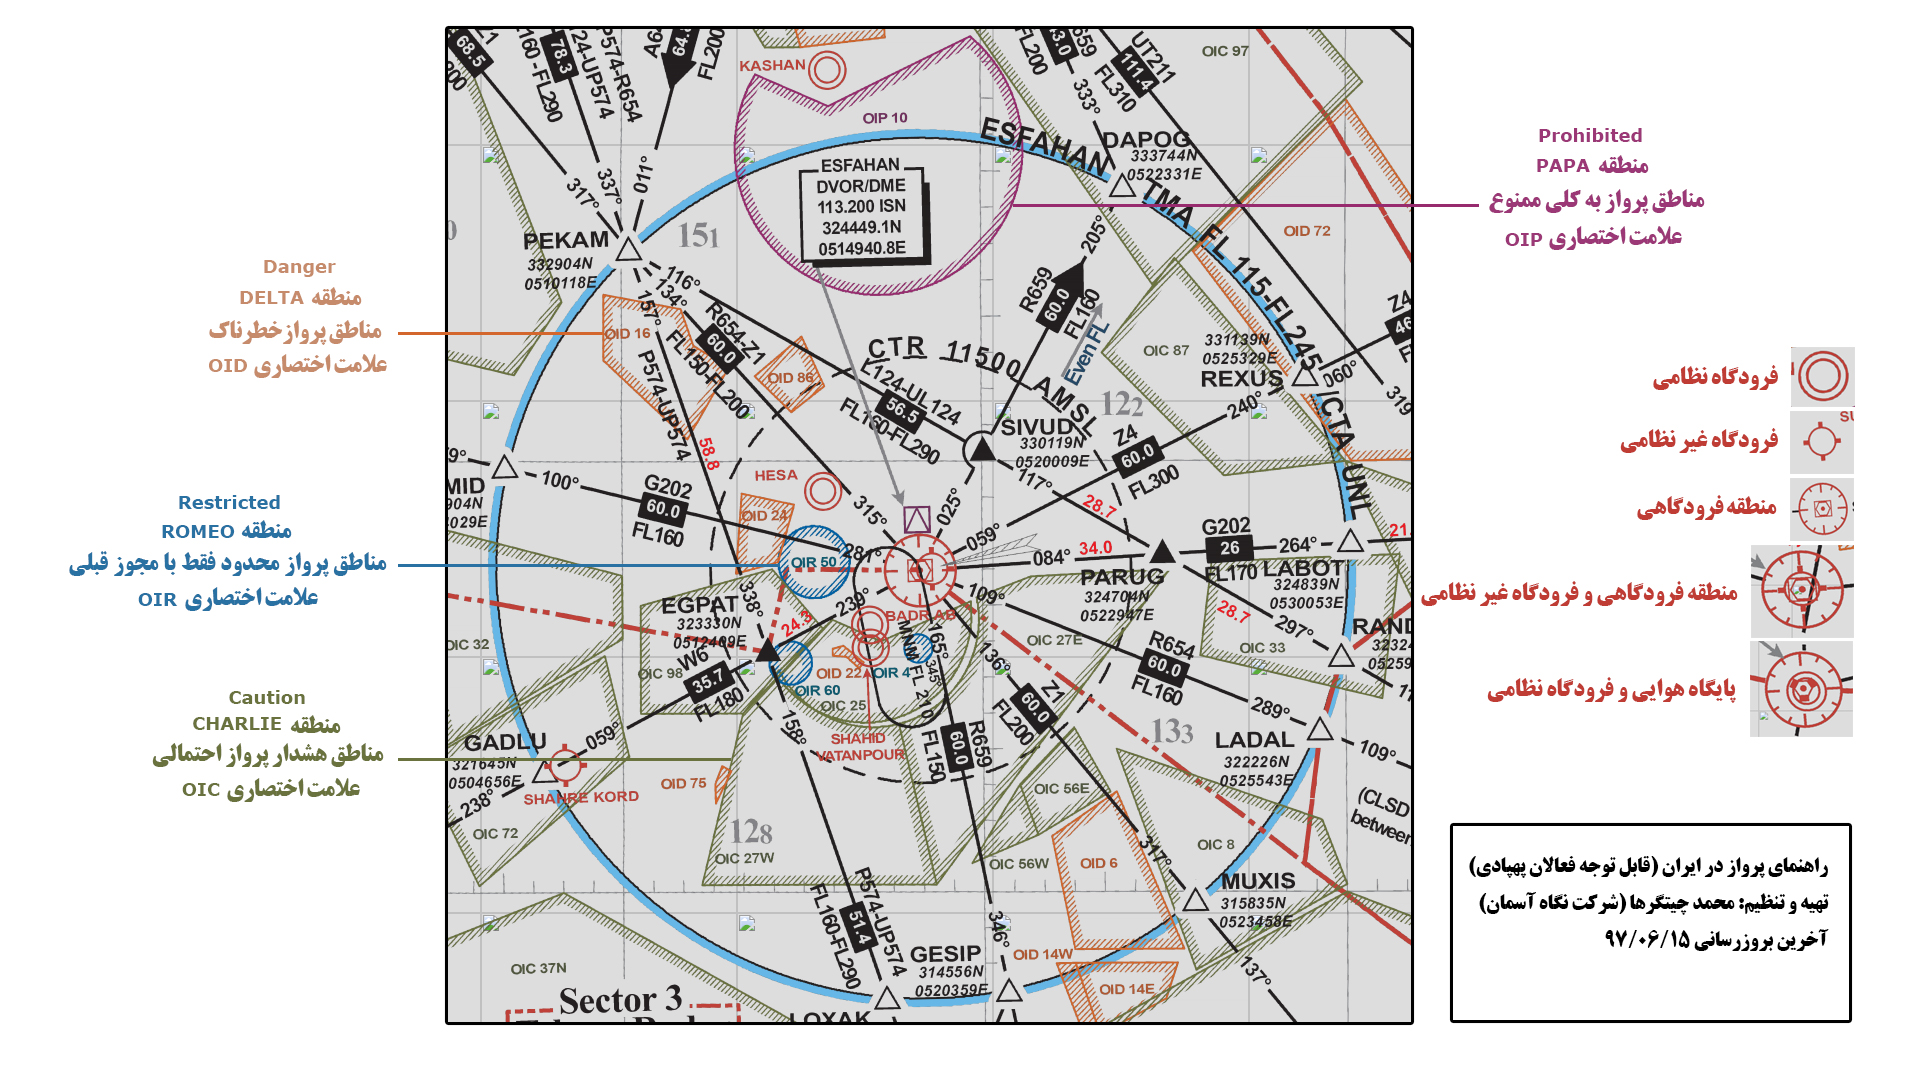 راهنمای شناسایی مناطق ممنوعه پرواز در استفاده از پهپاد، هلی شات و کوادکوپتر